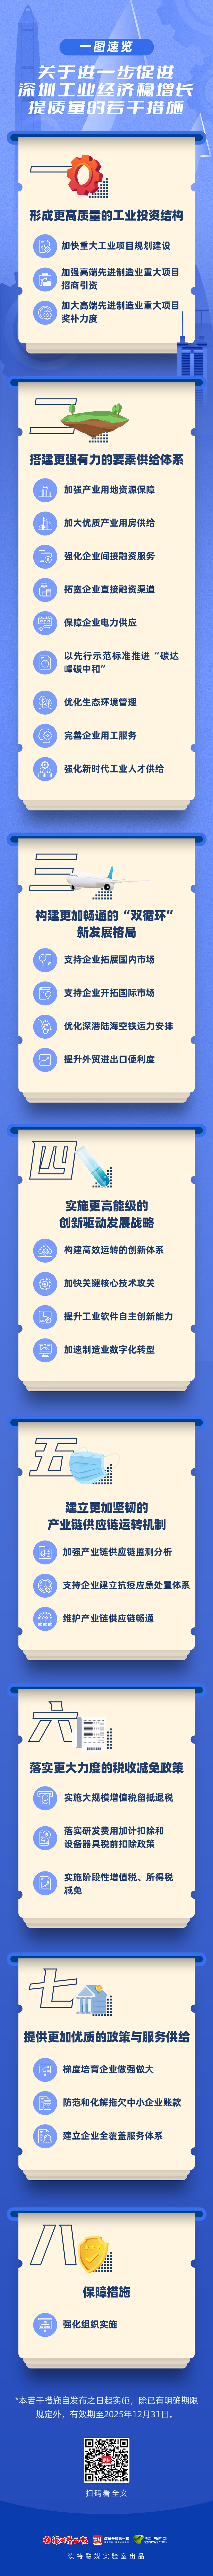 黑马计划软件免费版_一图速览 | 关于进一步促进深圳工业经济稳增长提质量的若干措施